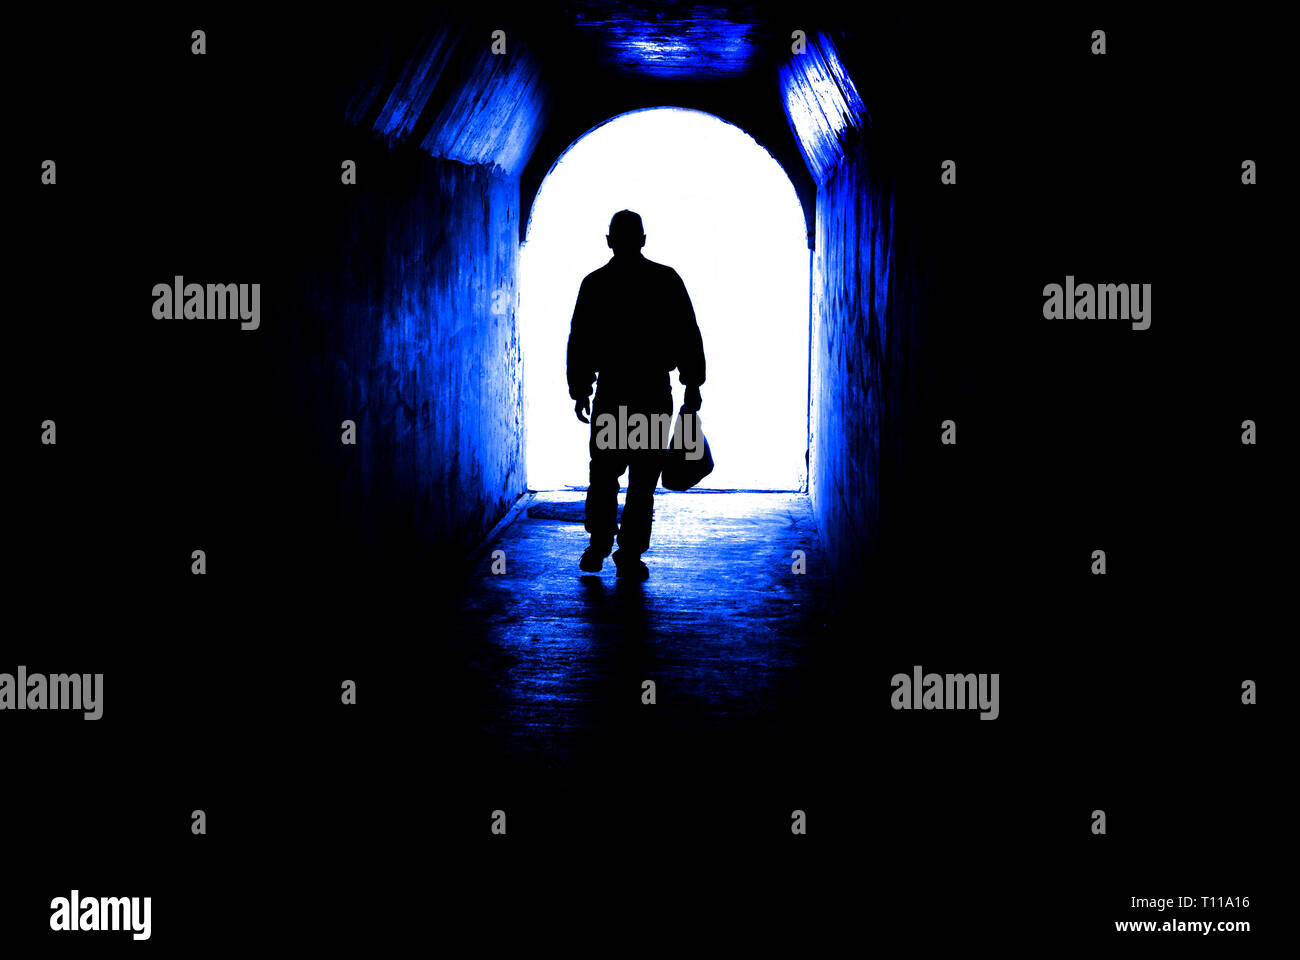 Persona caminando a través de un túnel hacia la luz al final. El cumplimiento de meta o salir de la oscuridad. Foto de stock